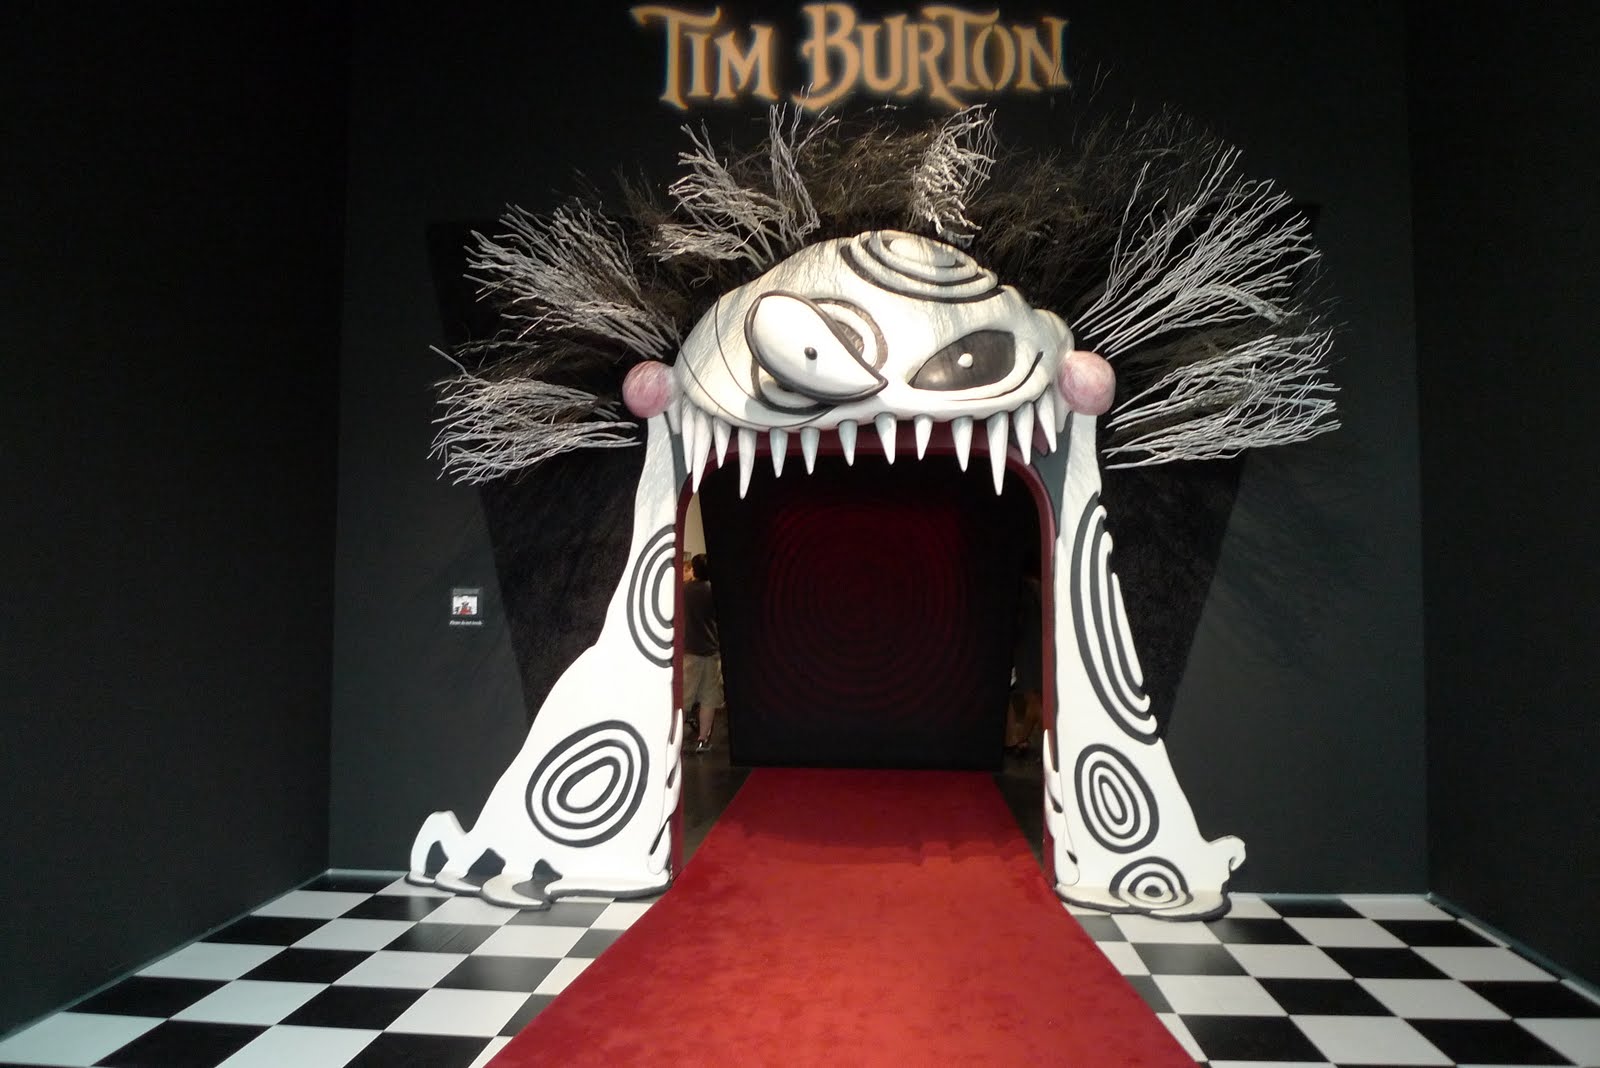 asomadetodosafetos.com - Mega exposição interativa sobre o universo de Tim Burton chega em São Paulo em maio